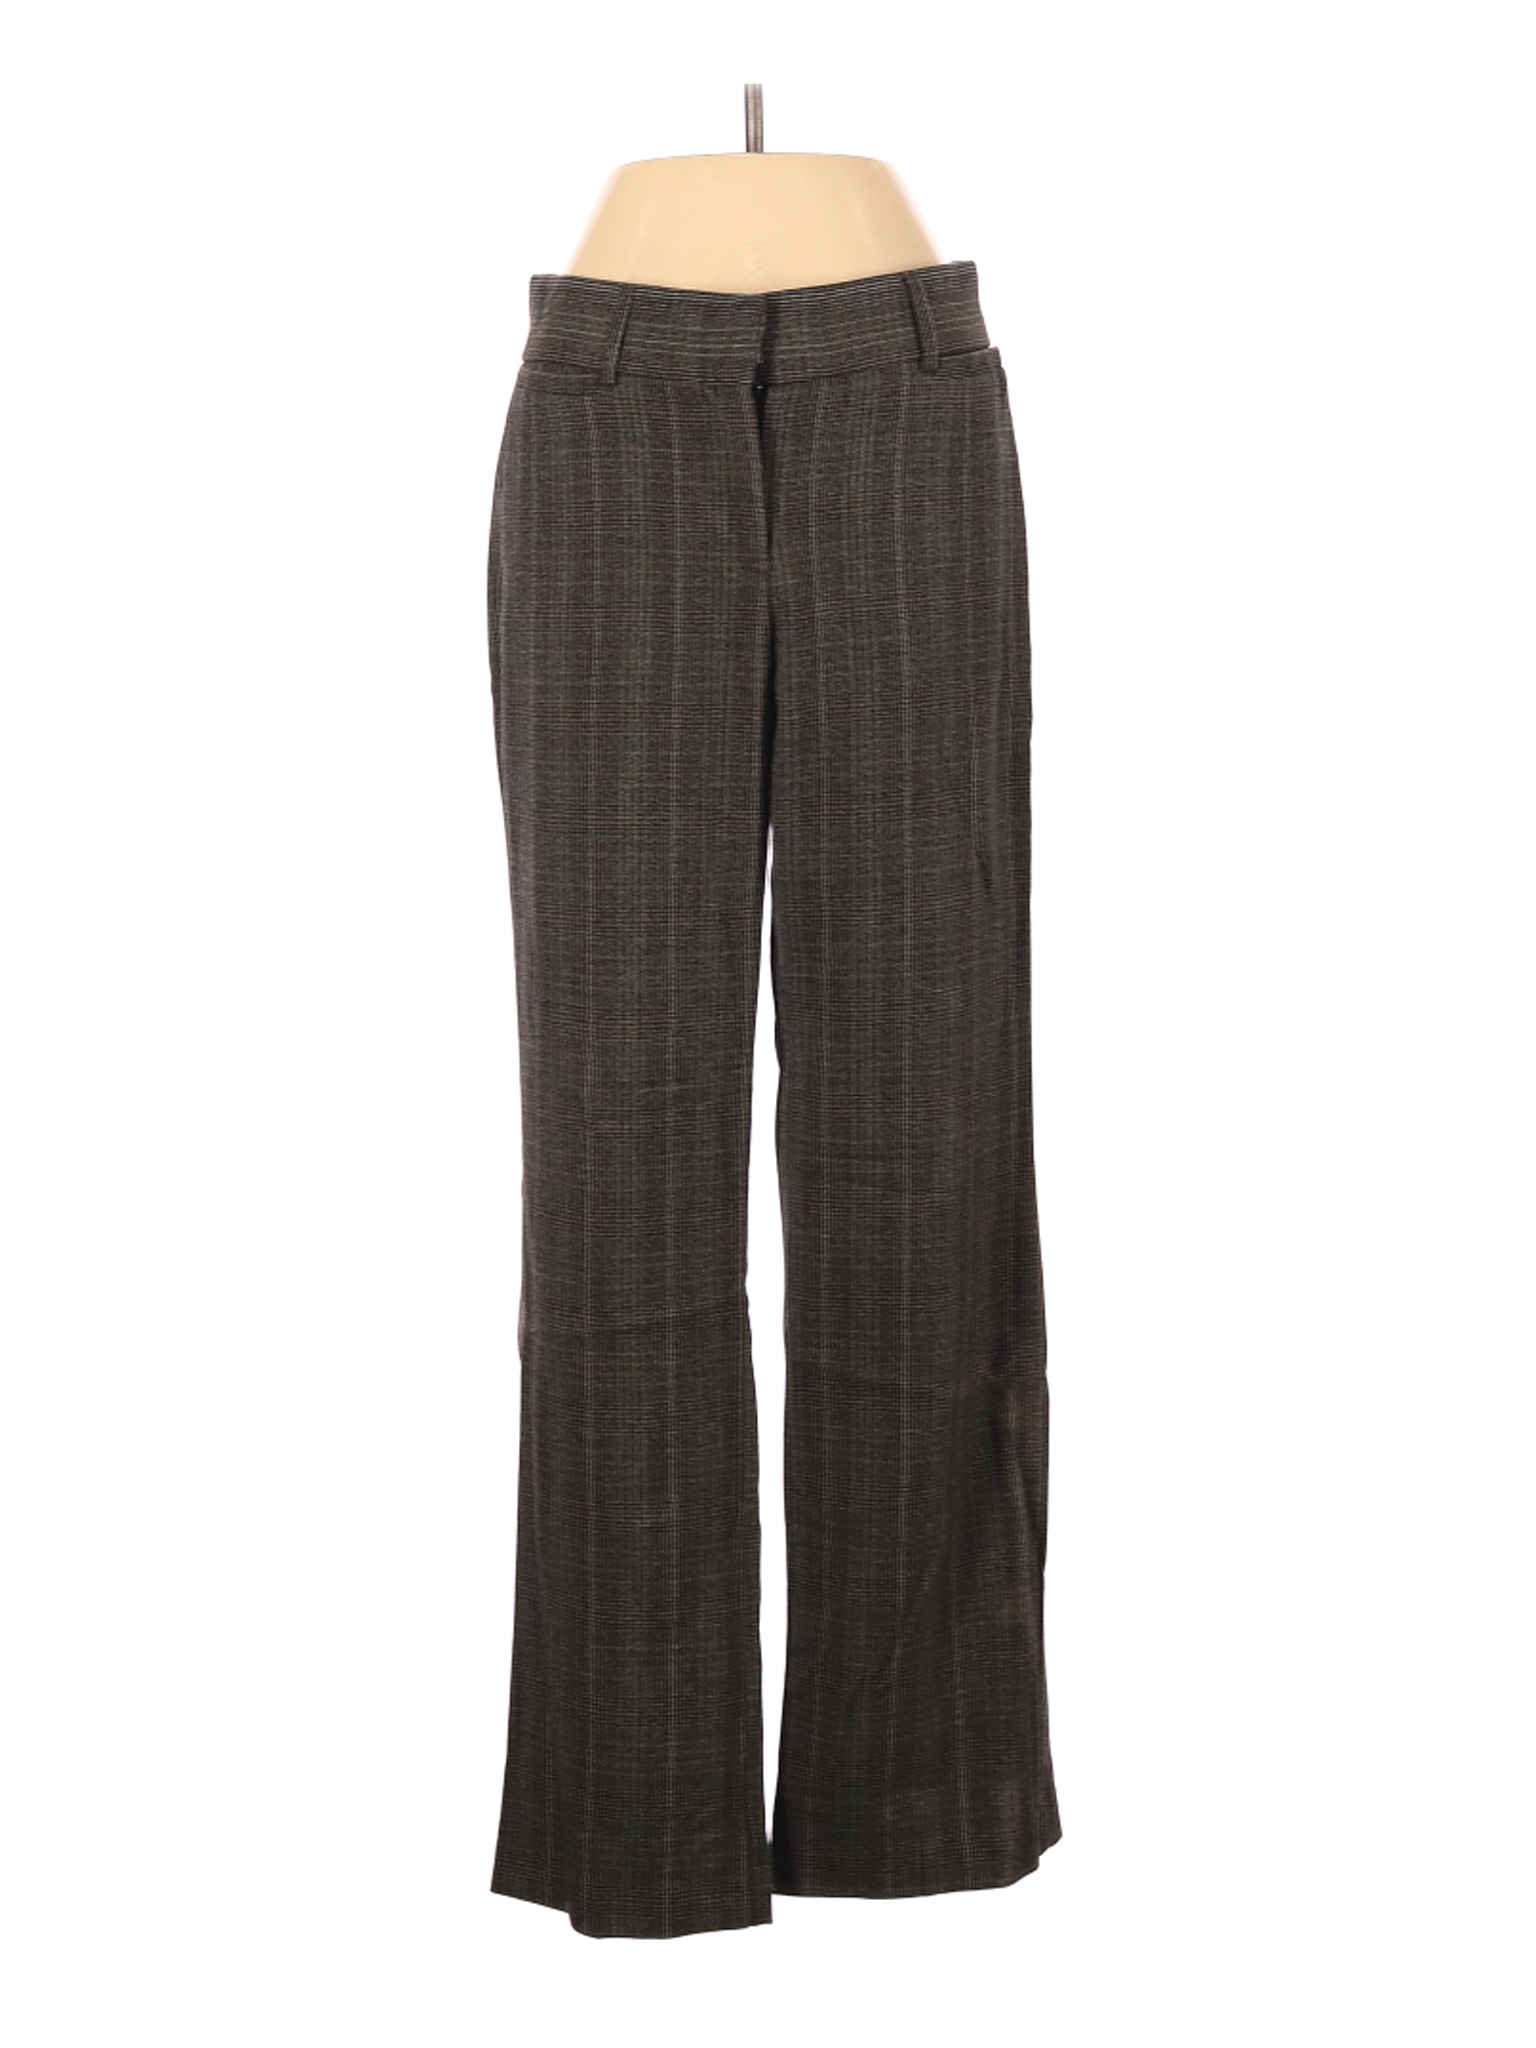 DressBarn Women Brown Dress Pants 4 | eBay